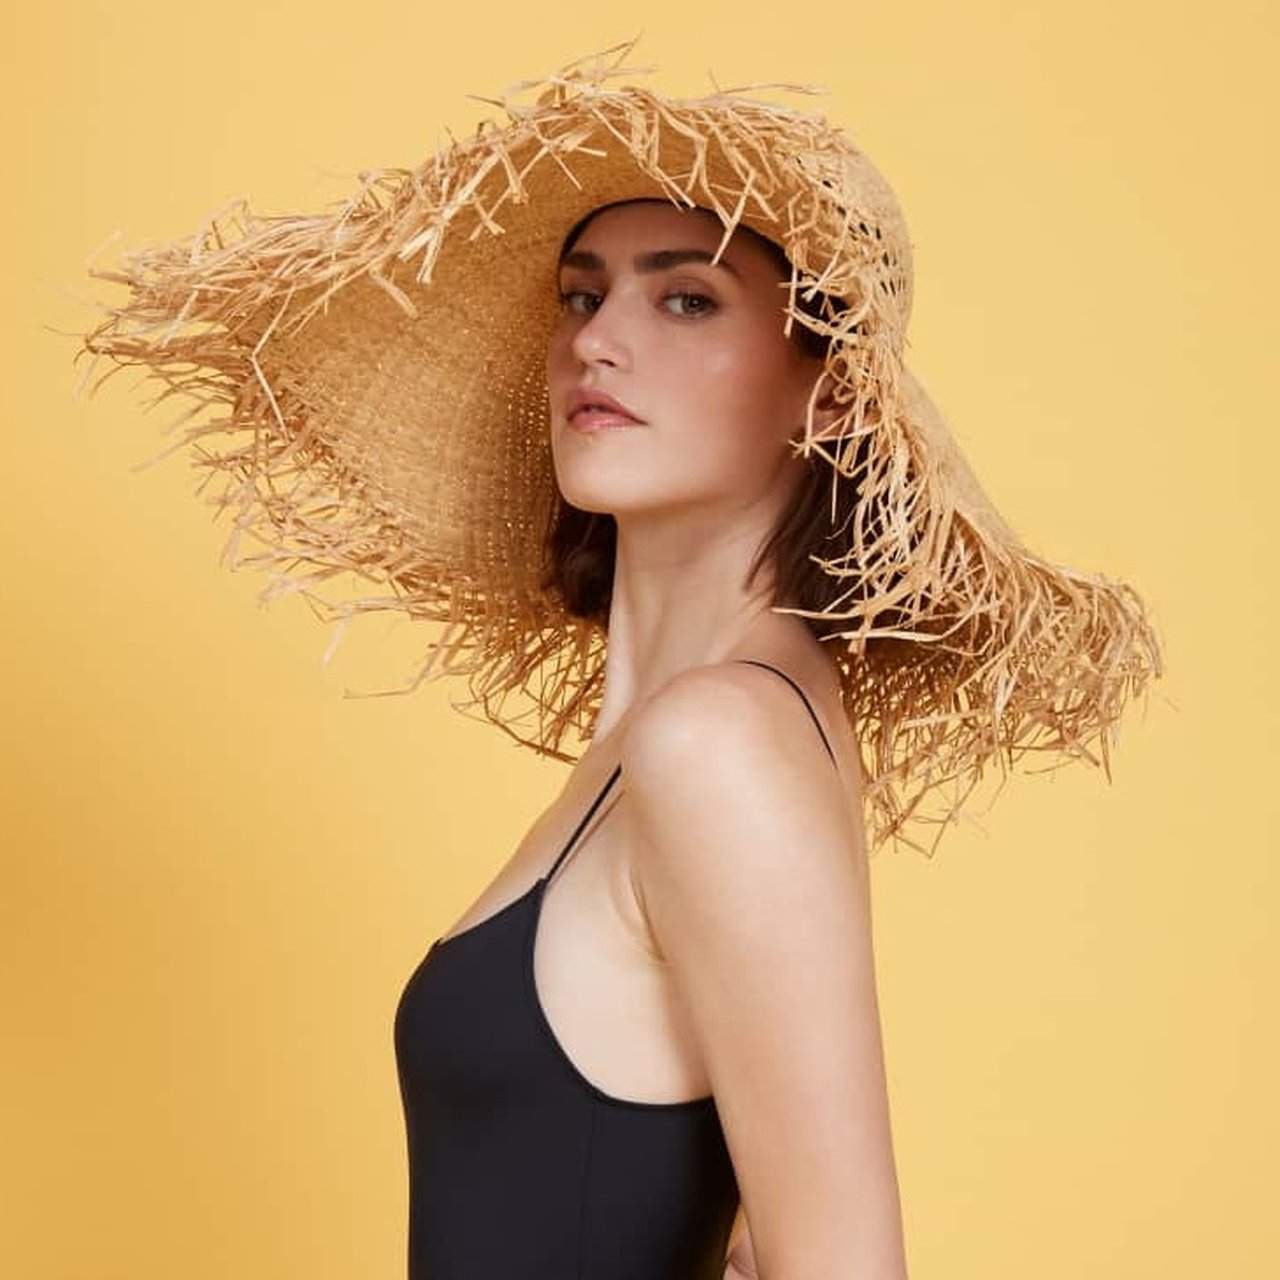 Strohhut für Damen Modetrends Sommer 2019Accessoires Outfit Ideen